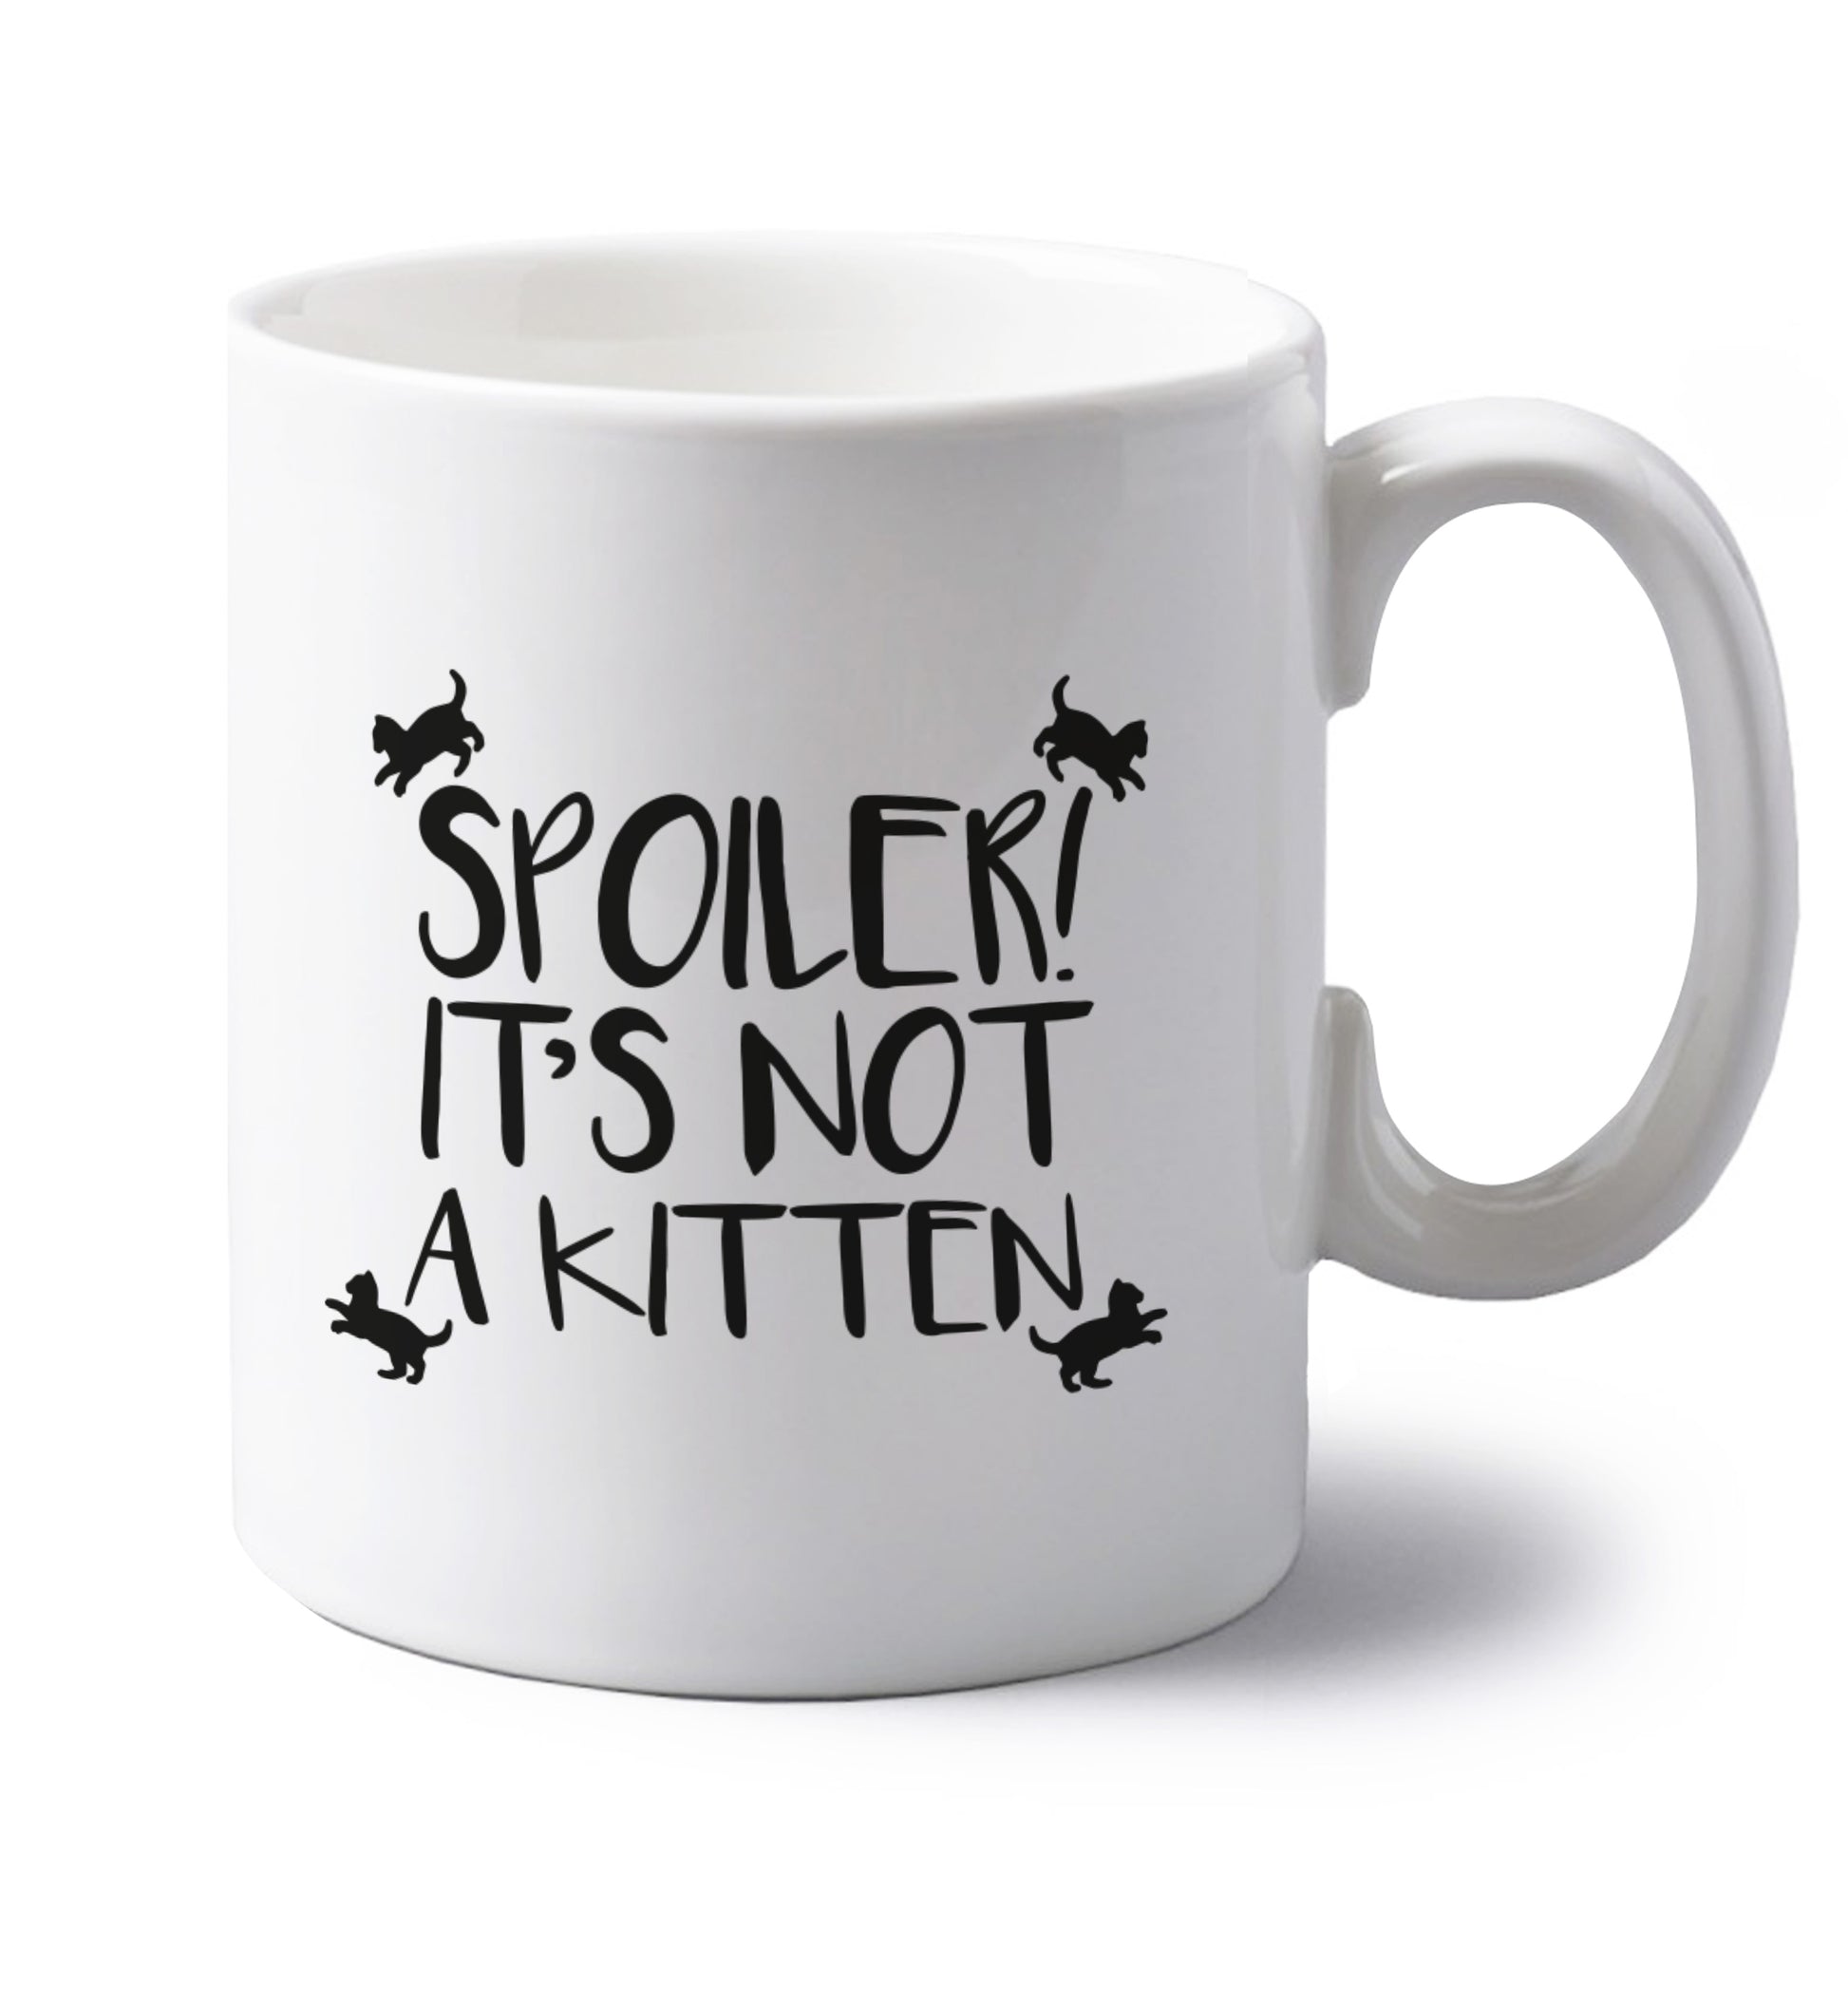 Spoiler it's not a kitten left handed white ceramic mug 